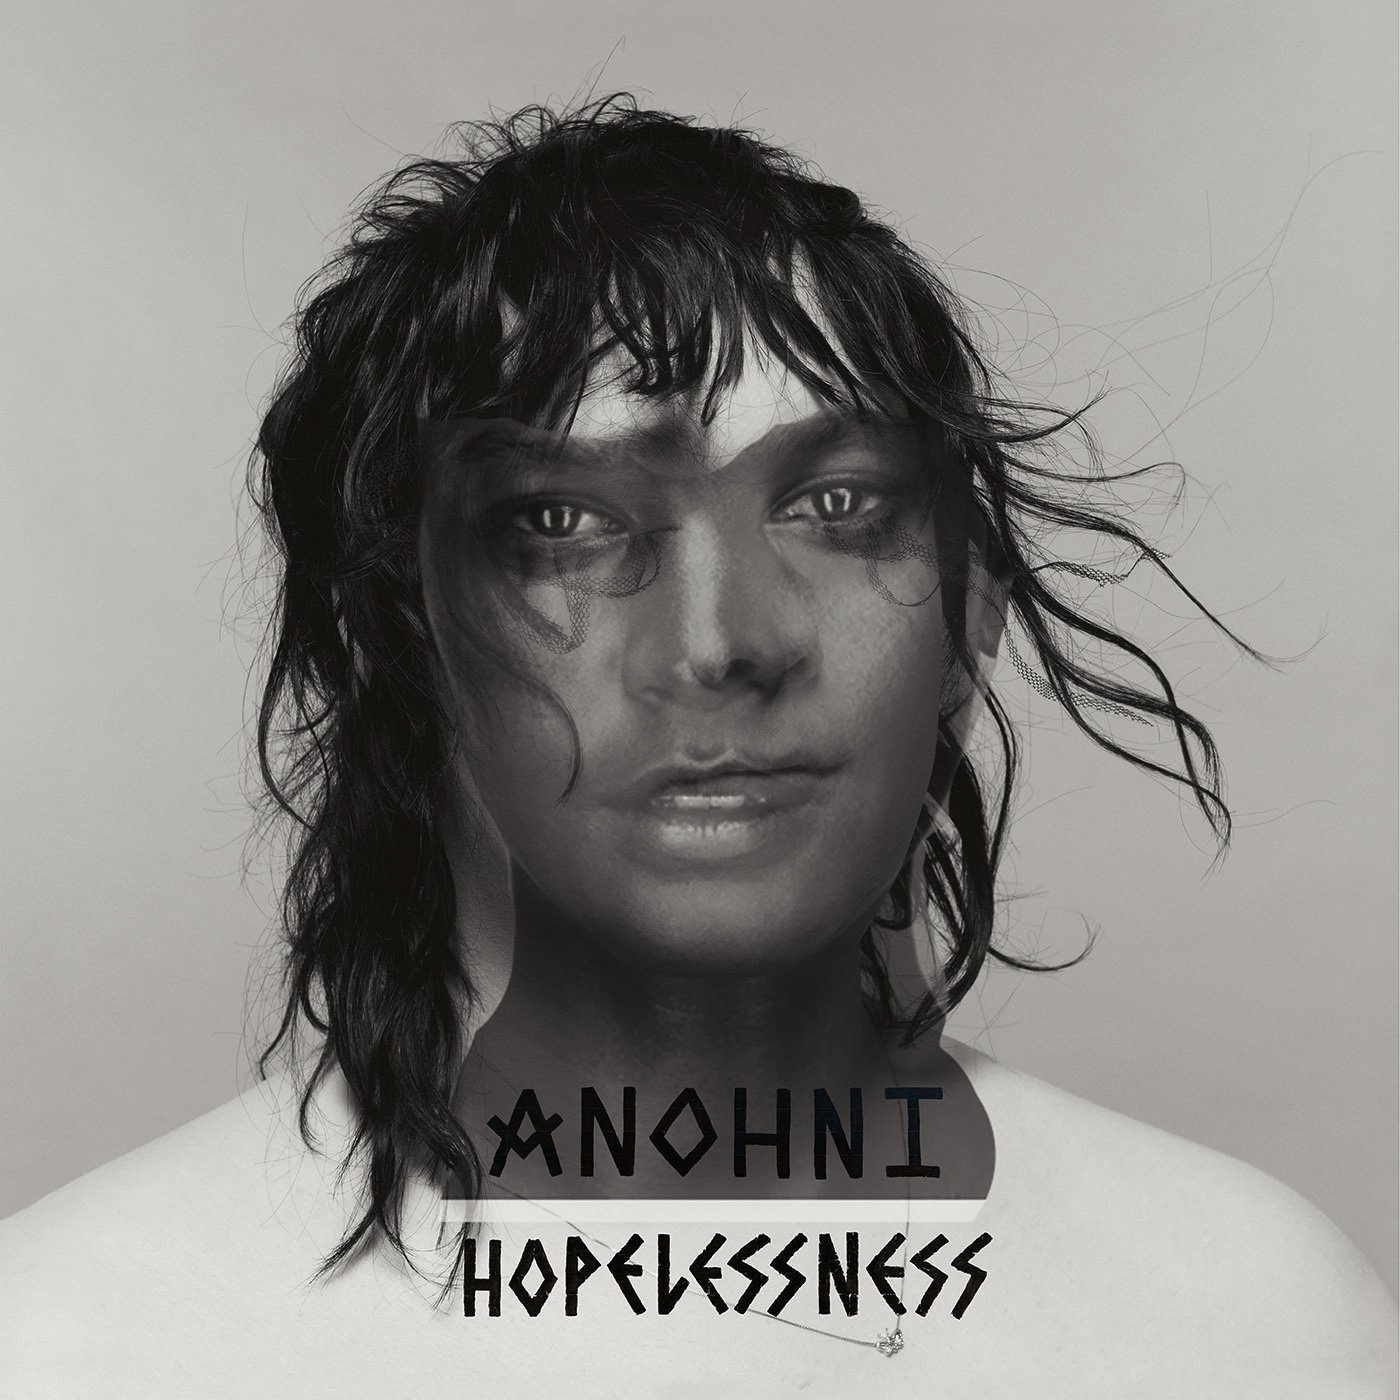 Anohni - Hopelessness vinyl cover